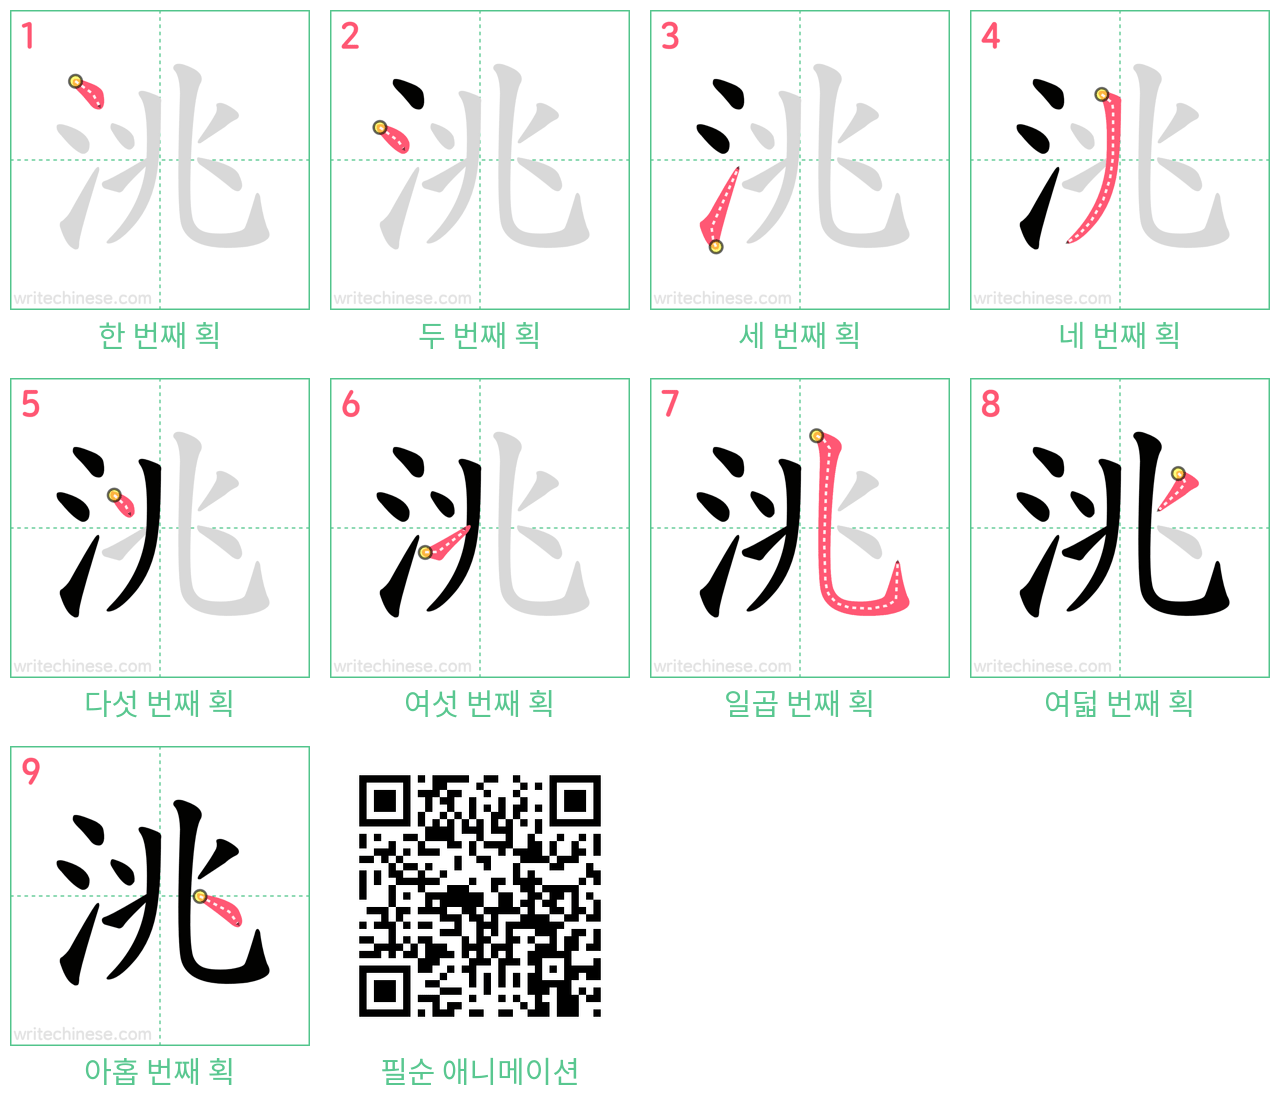 洮 step-by-step stroke order diagrams